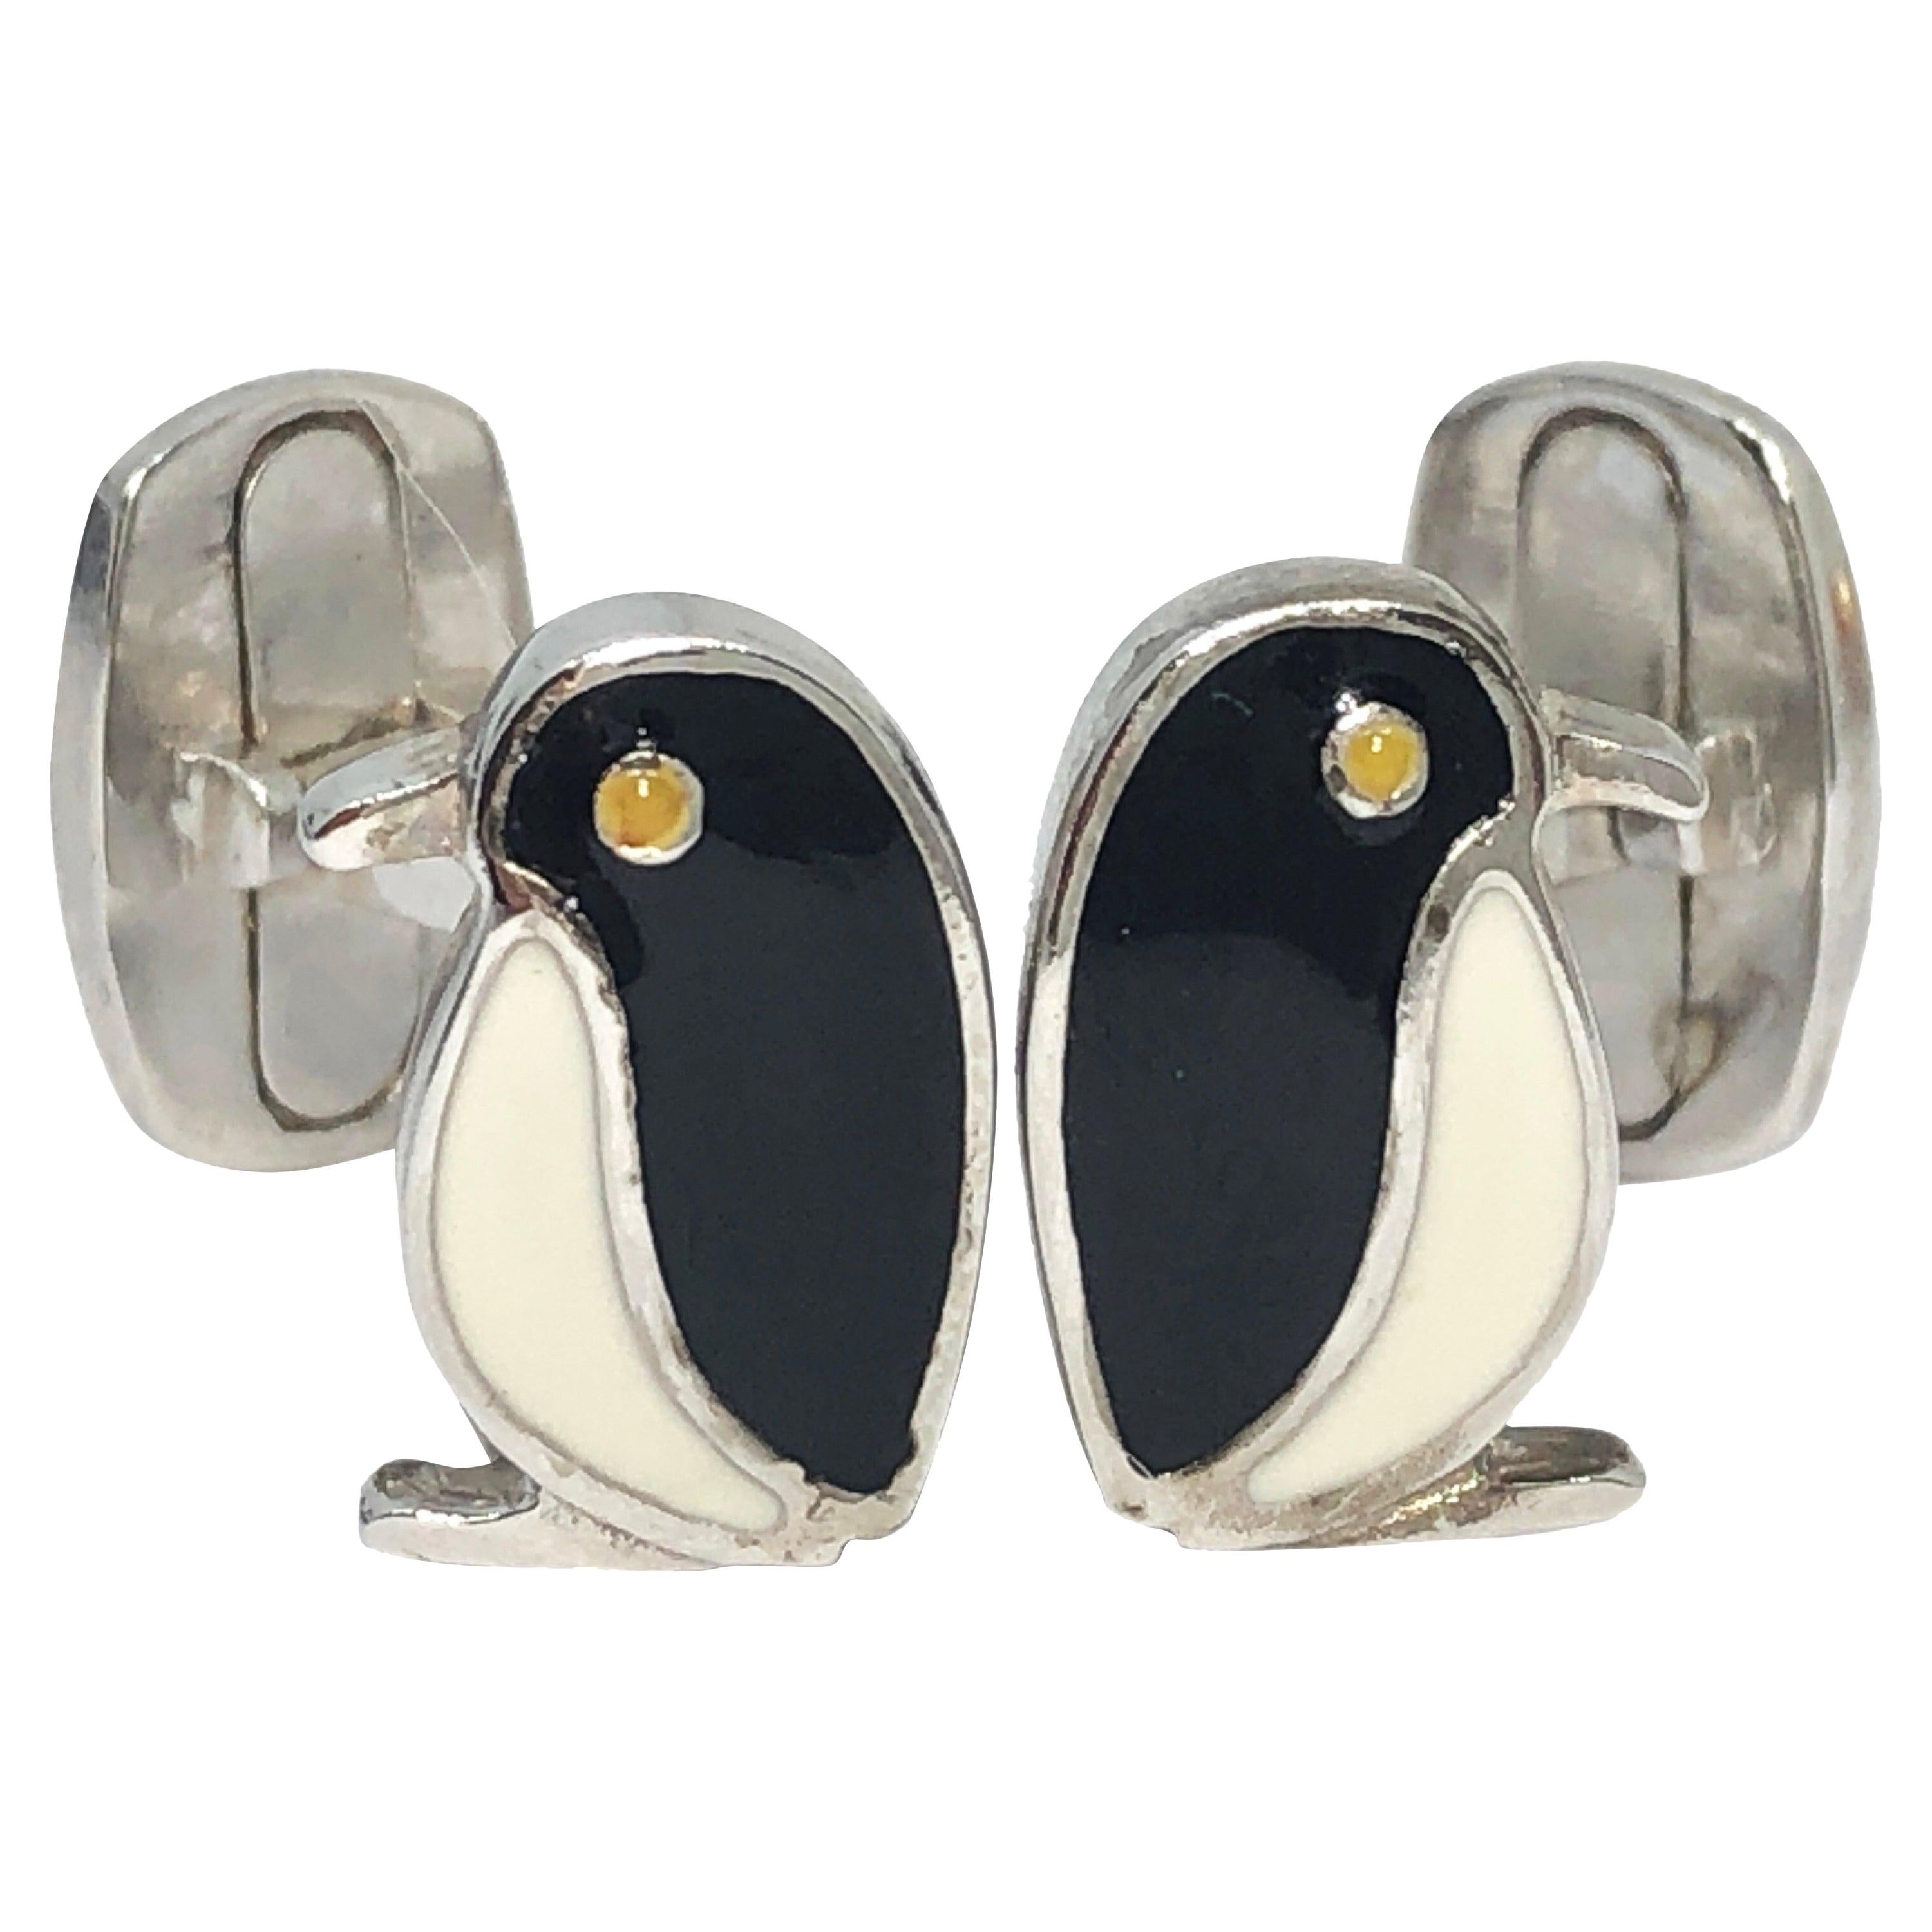 Berca Black White Hand Enameled Penguin Shaped Sterling Silver Cufflinks